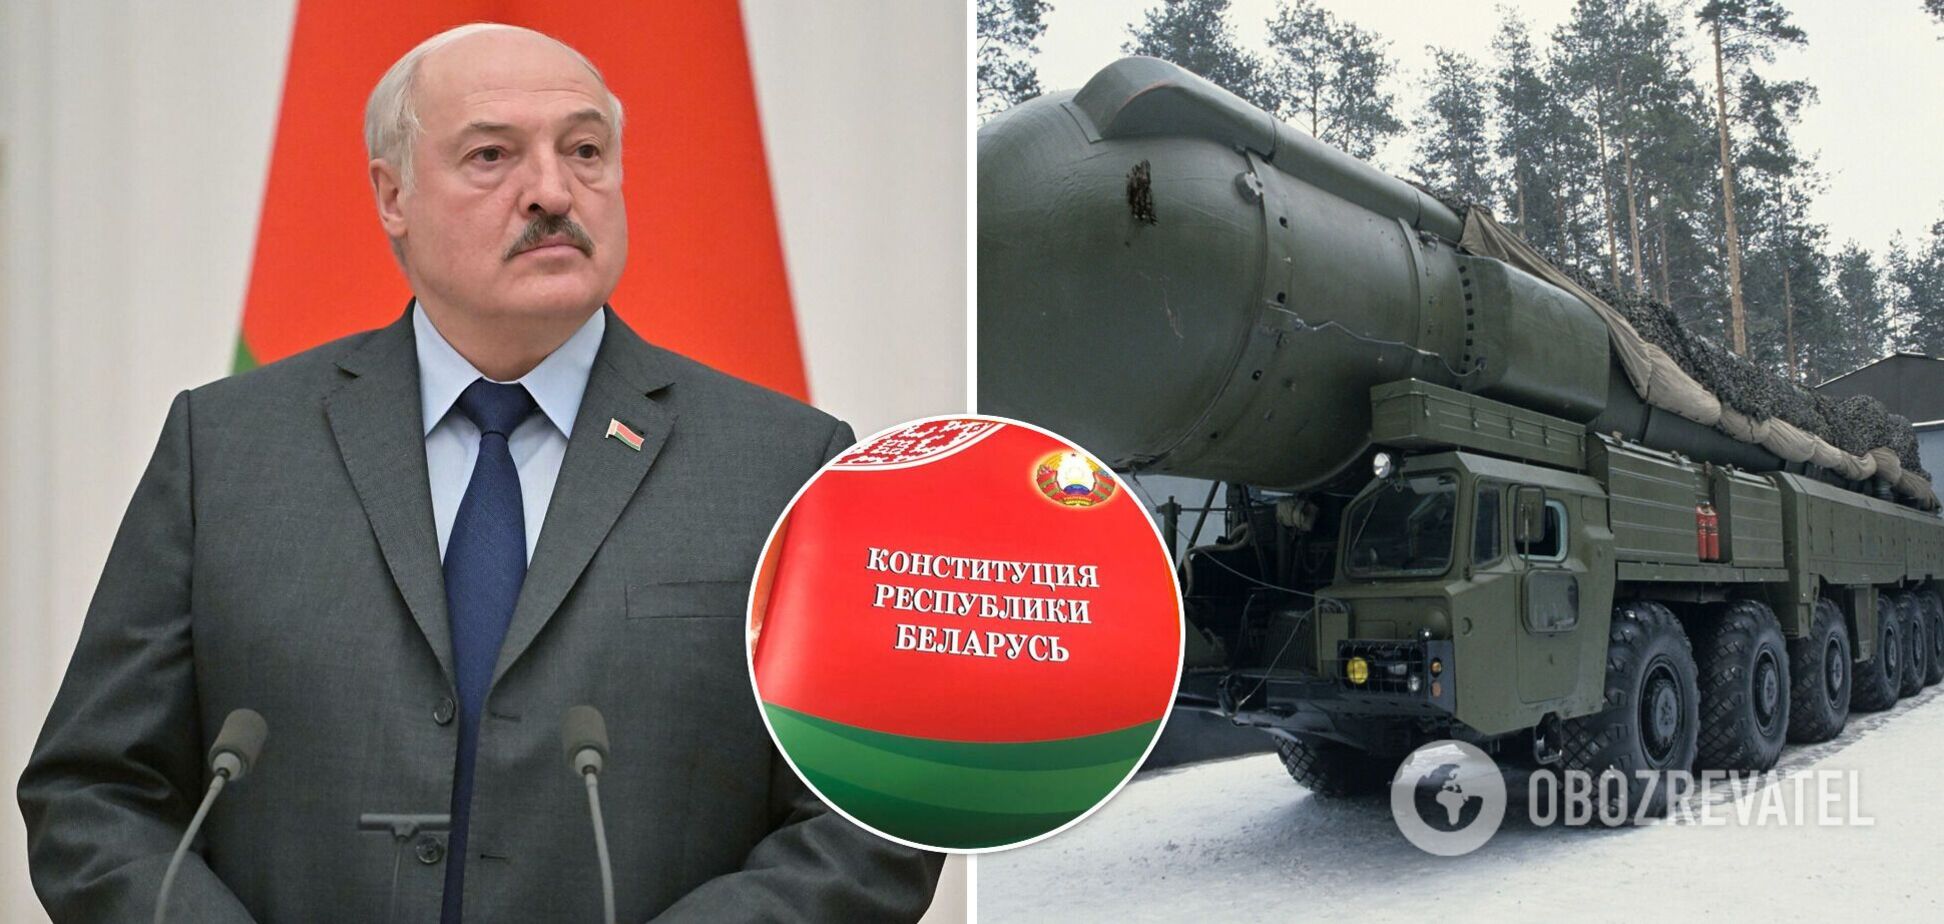 В Беларуси начался референдум, который позволит Лукашенко снова избираться, а в стране разместить ядерное оружие